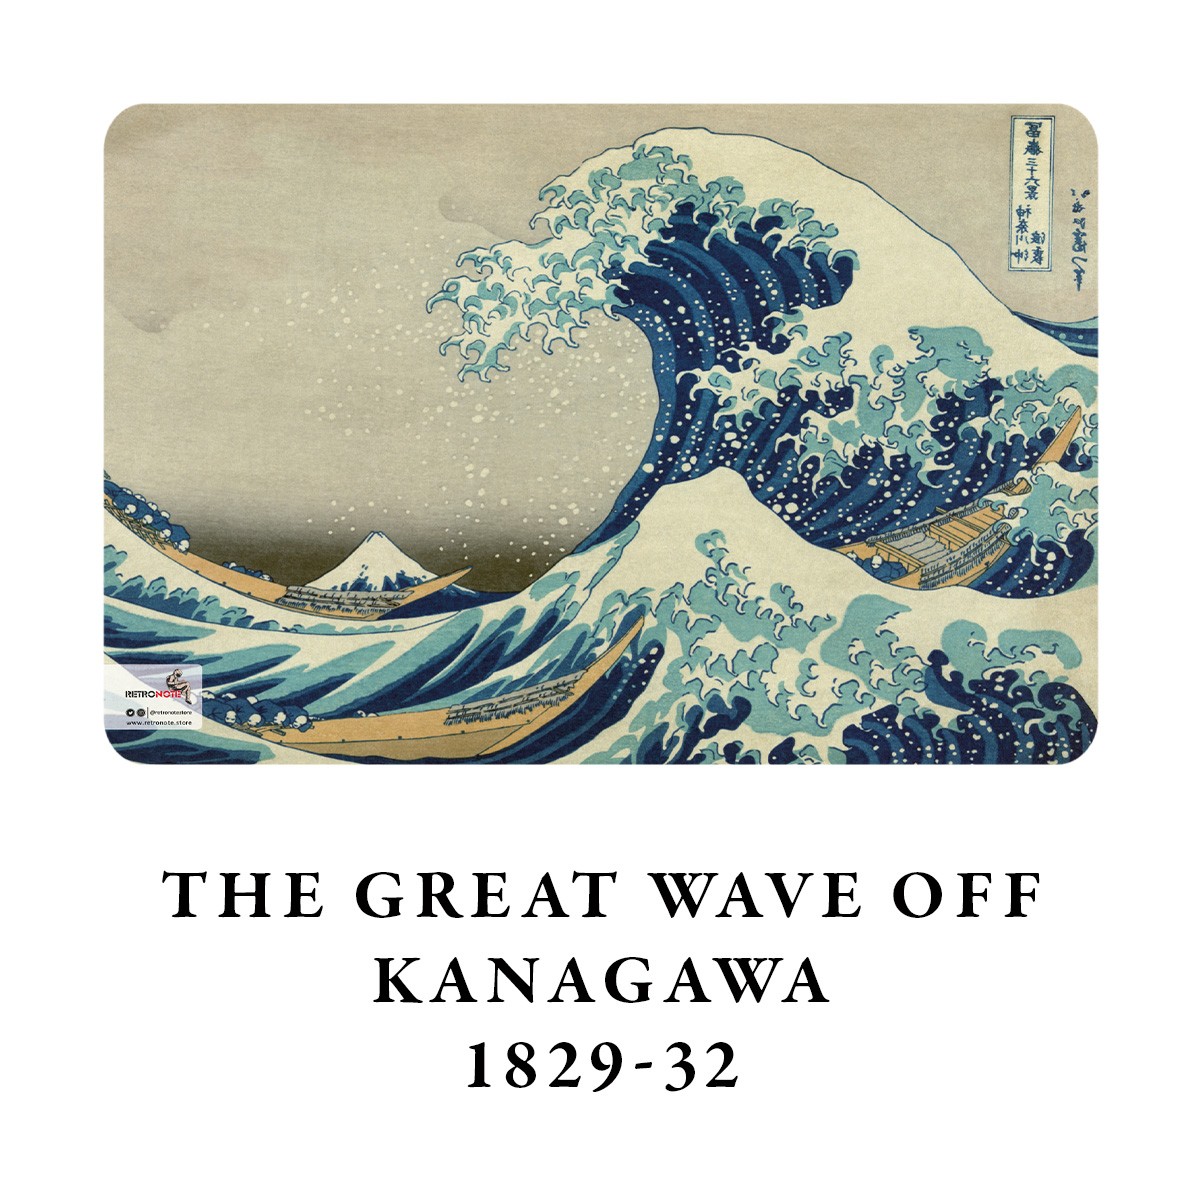 The Great Wave off Kanagawa / Hokusai, 1829-32 / A4 Defter -5